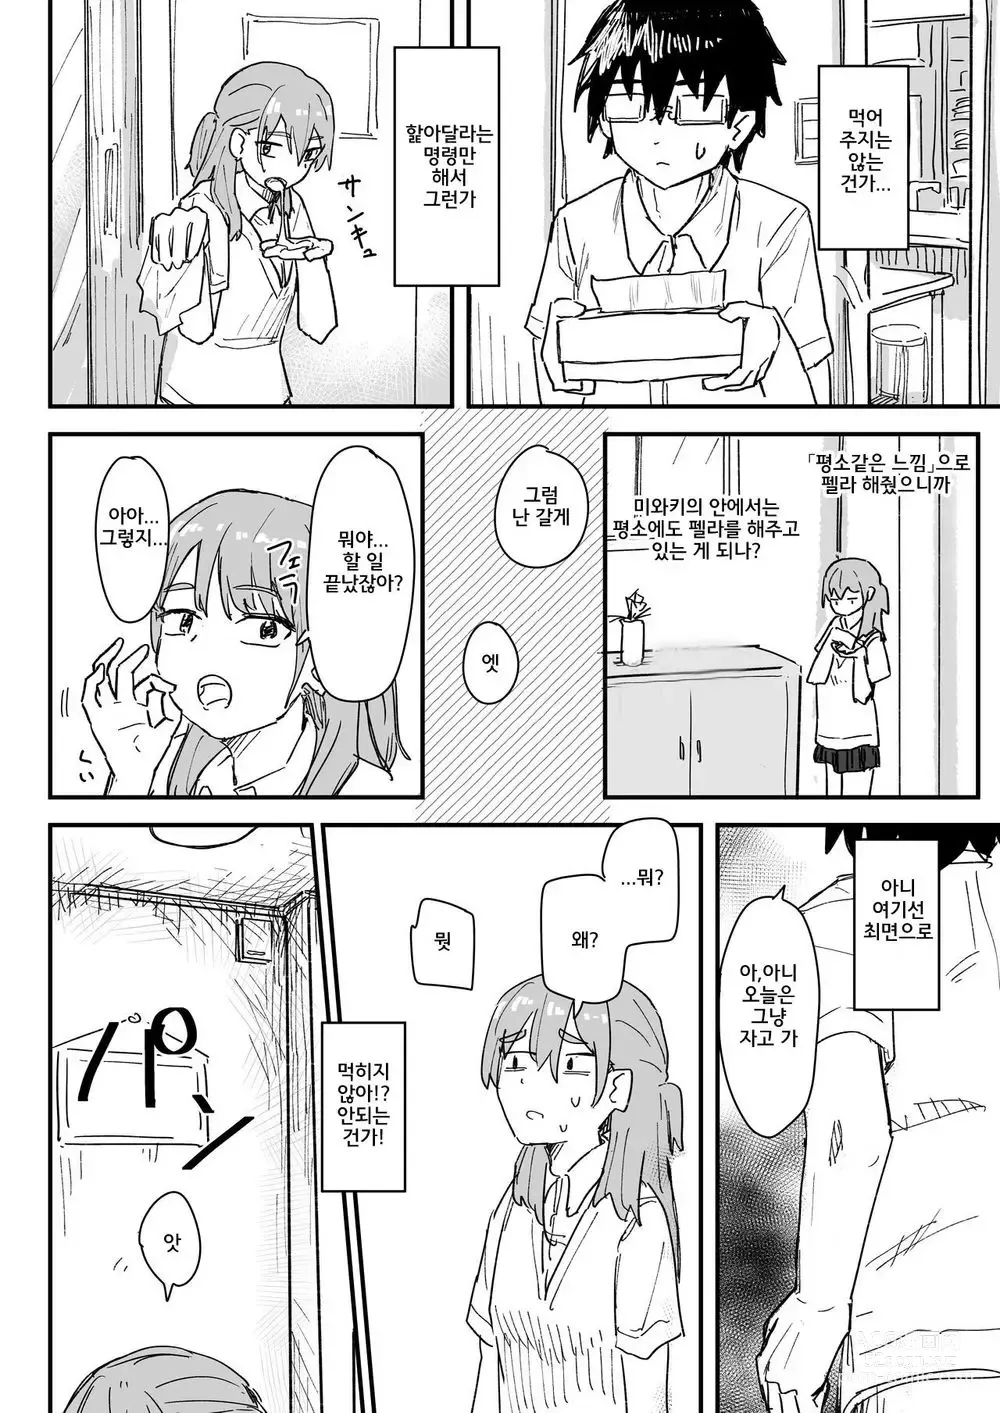 Page 13 of doujinshi 최면어플이 진짜일지도 모르기에 써봤다